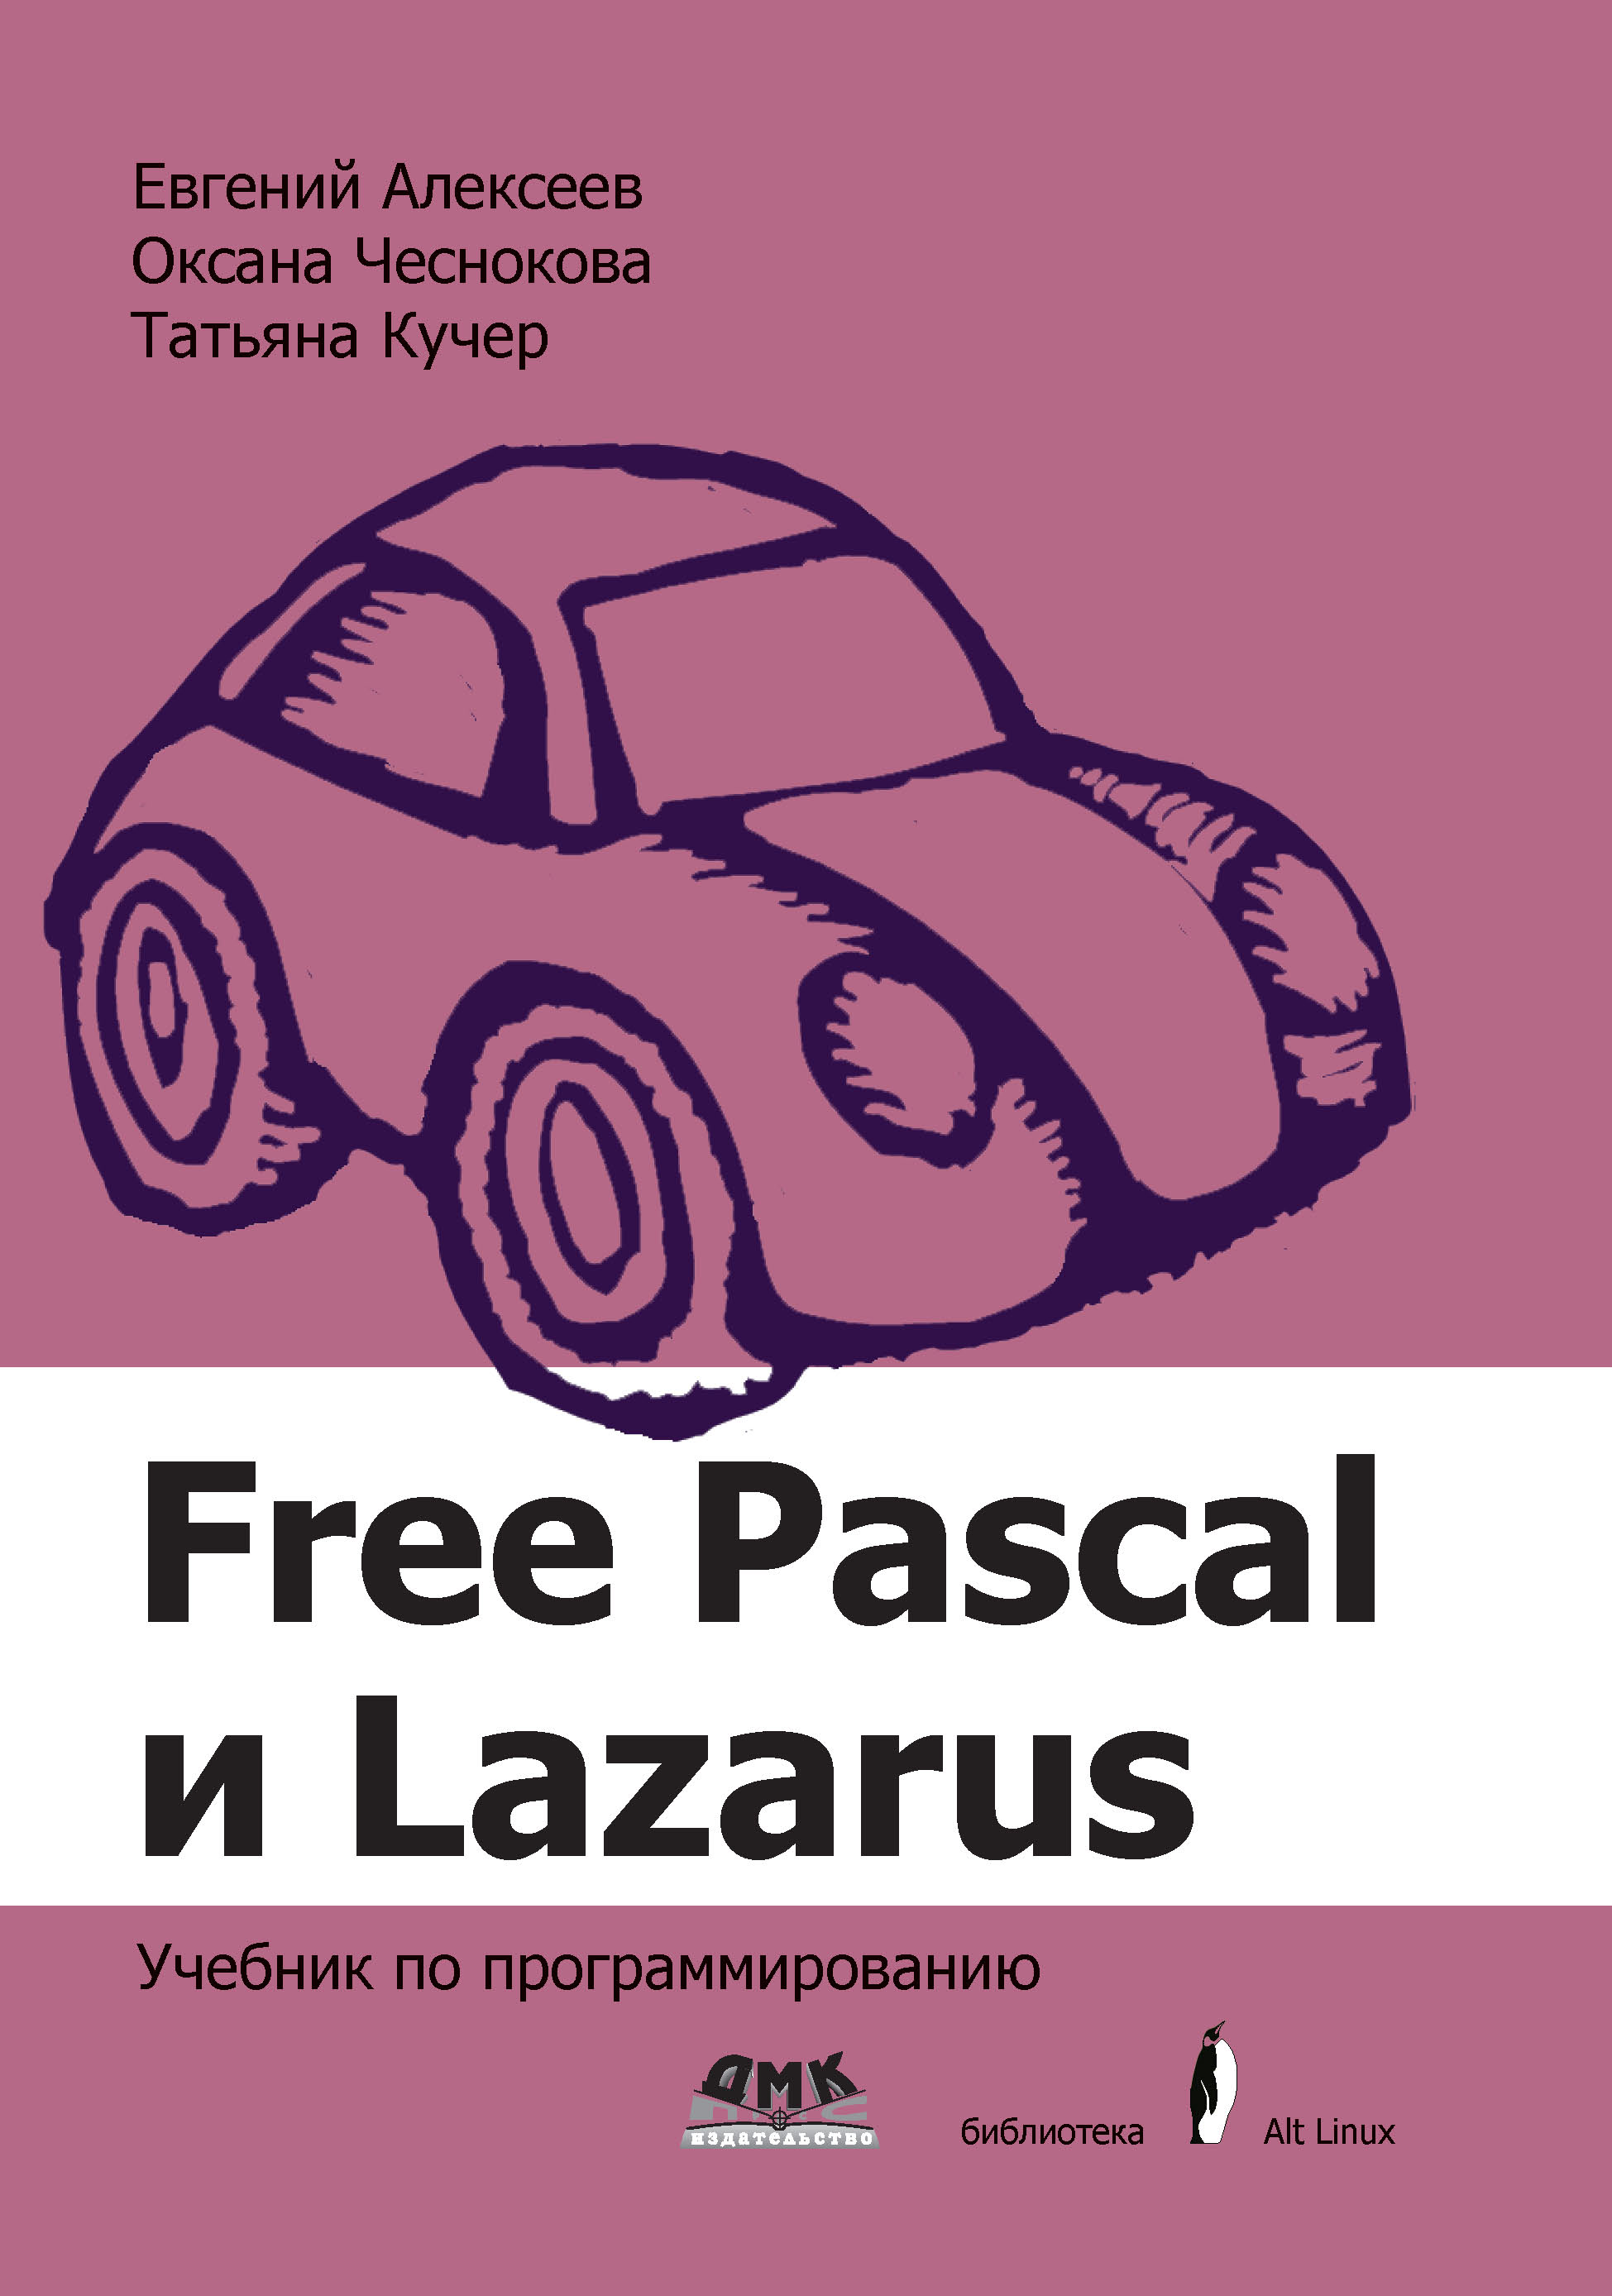 Книга Библиотека ALT Linux (ДМК Пресс) Free Pascal и Lazarus. Учебник по программированию созданная Е. Р. Алексеев, О. В. Чеснокова, Т. В. Кучер может относится к жанру программирование. Стоимость электронной книги Free Pascal и Lazarus. Учебник по программированию с идентификатором 48411319 составляет 549.00 руб.